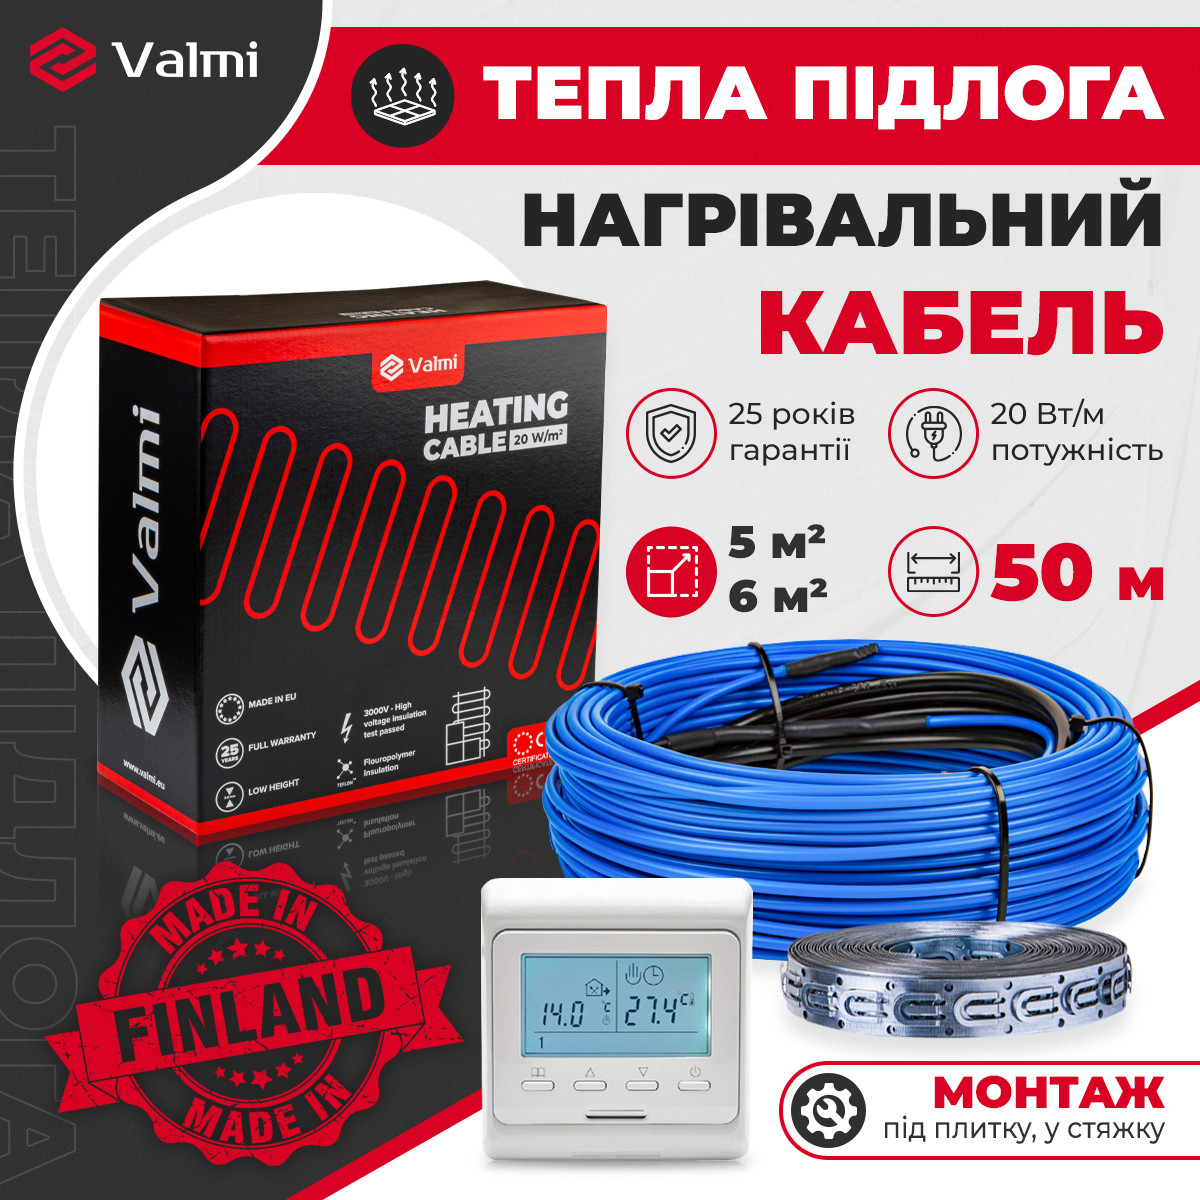 Тепла кабельна підлога Valmi 5м²-6м² /1000В (50м) тонкий кабель під плитку 20 Вт/м з терморегулятором E51